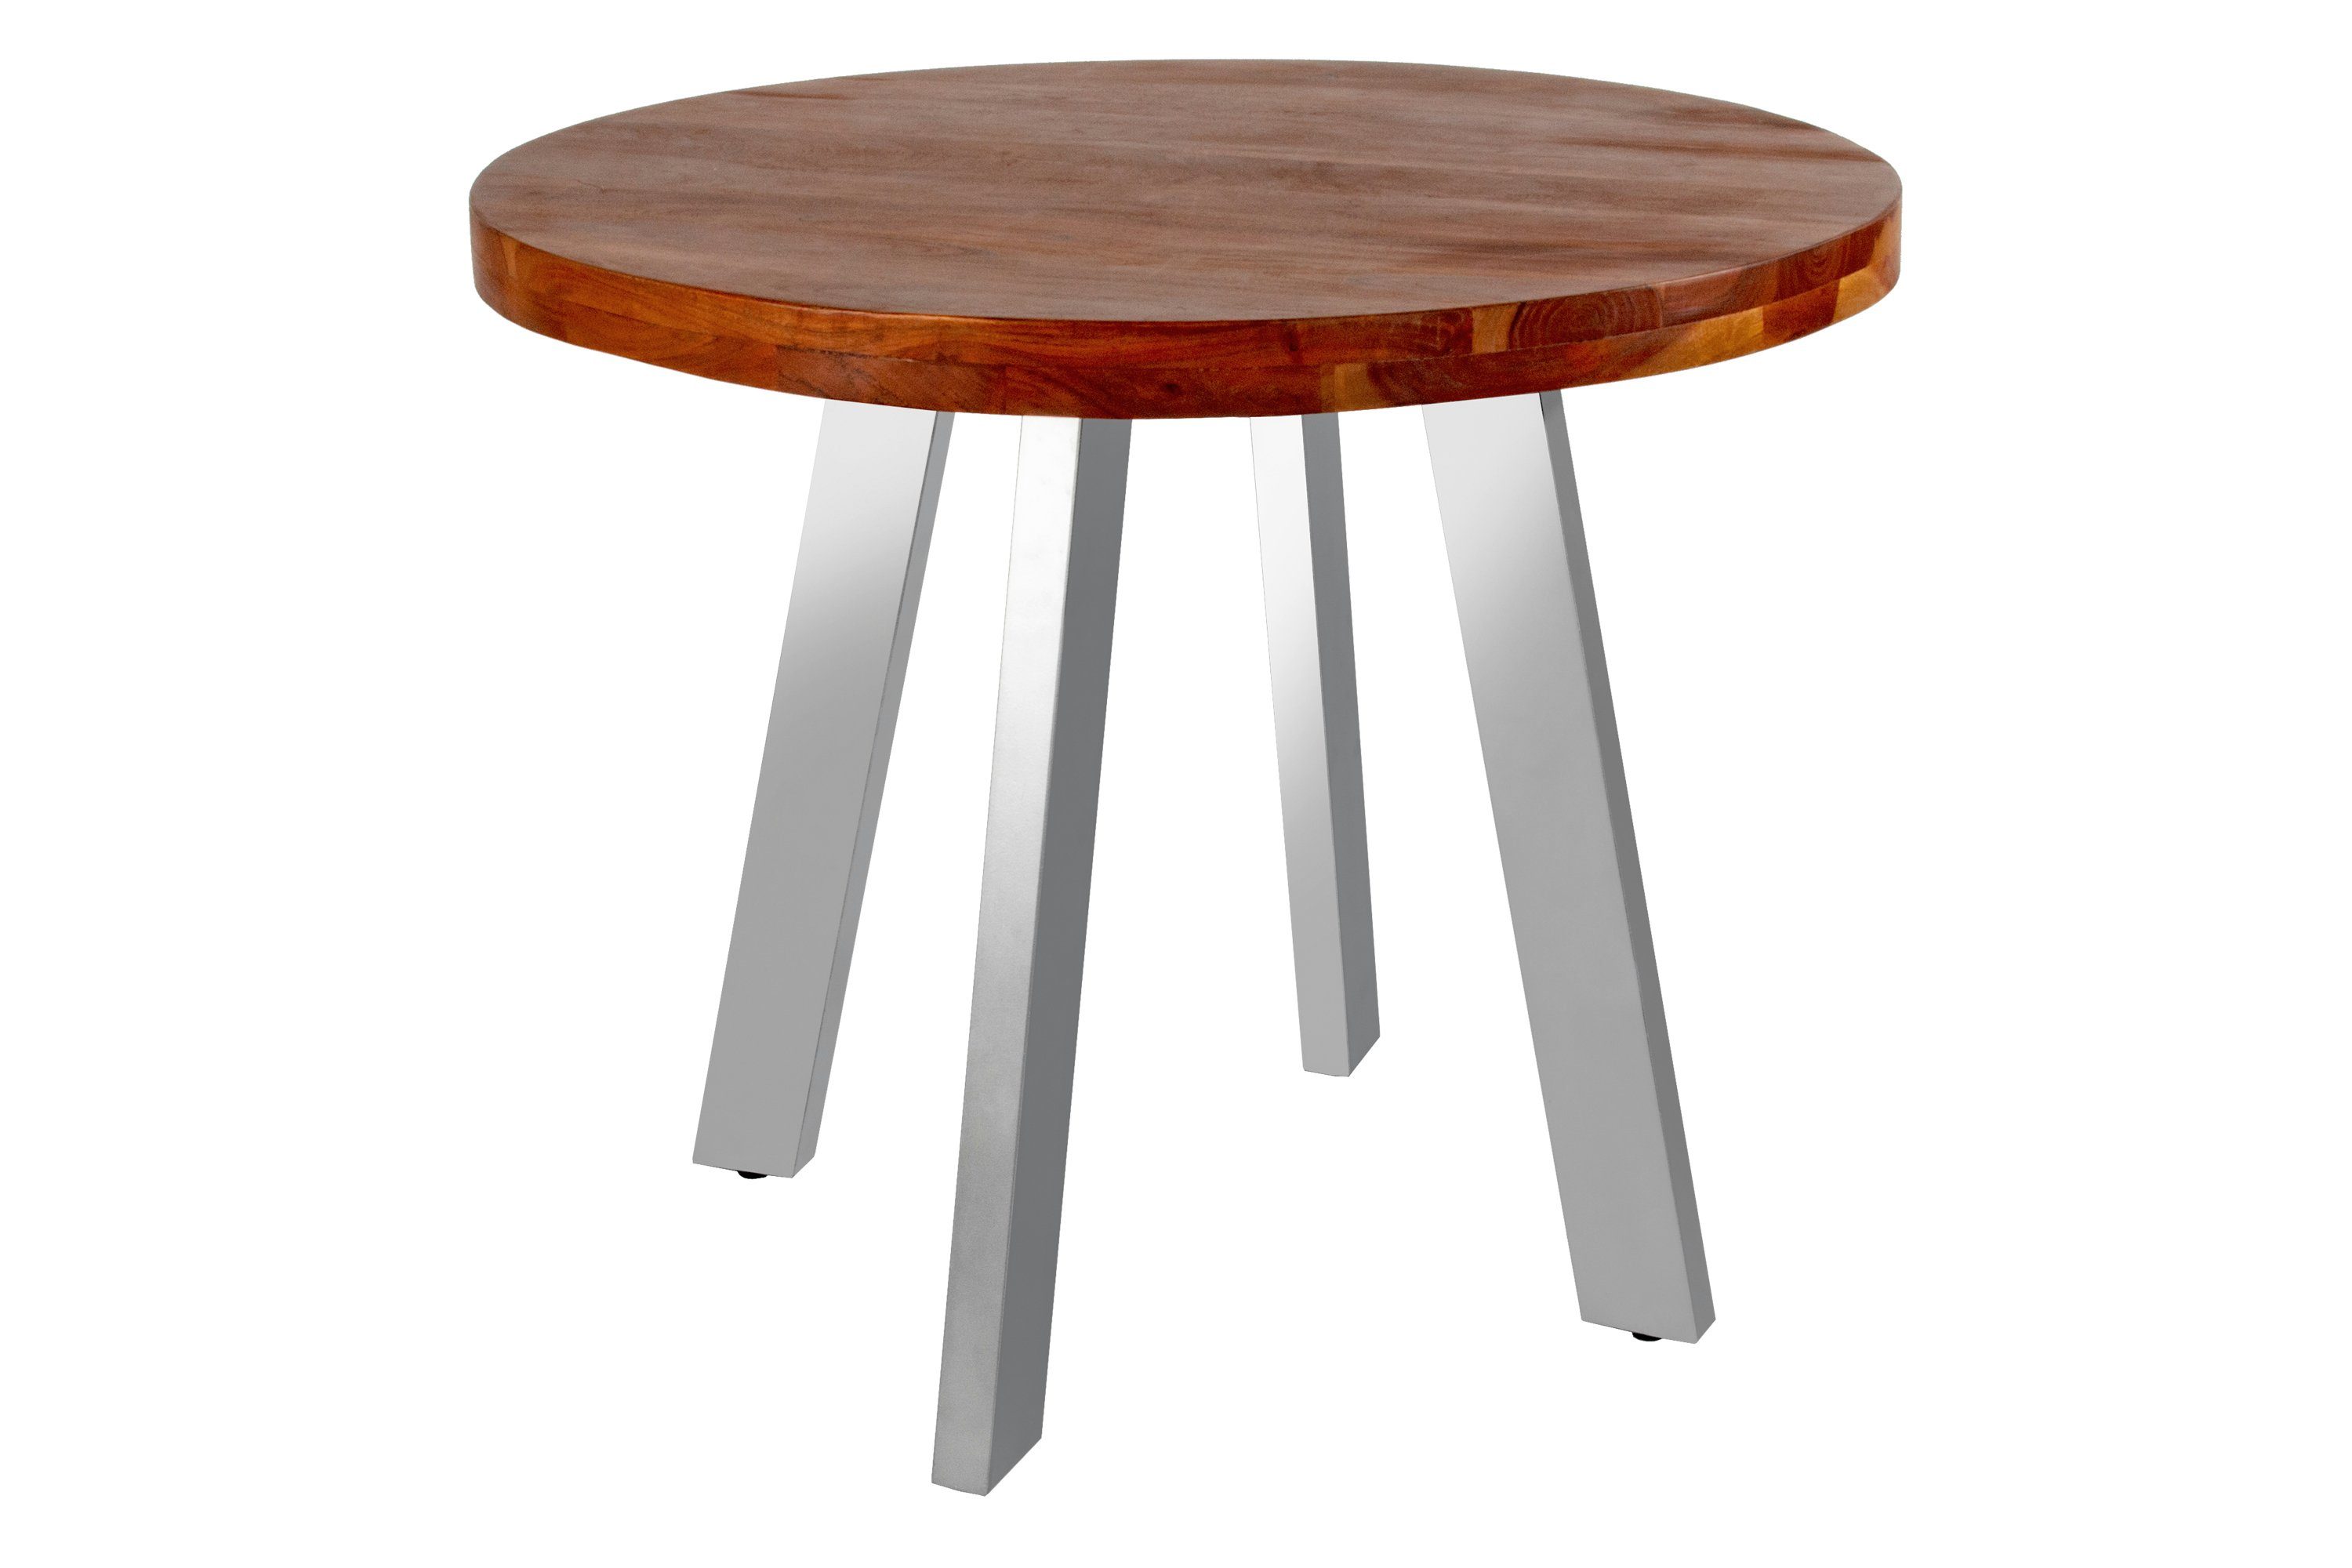 SAM® Esstisch Samira, Akazienholz, runde Tischplatte, 4-Fußgestell aus Metall nussbaum | silber